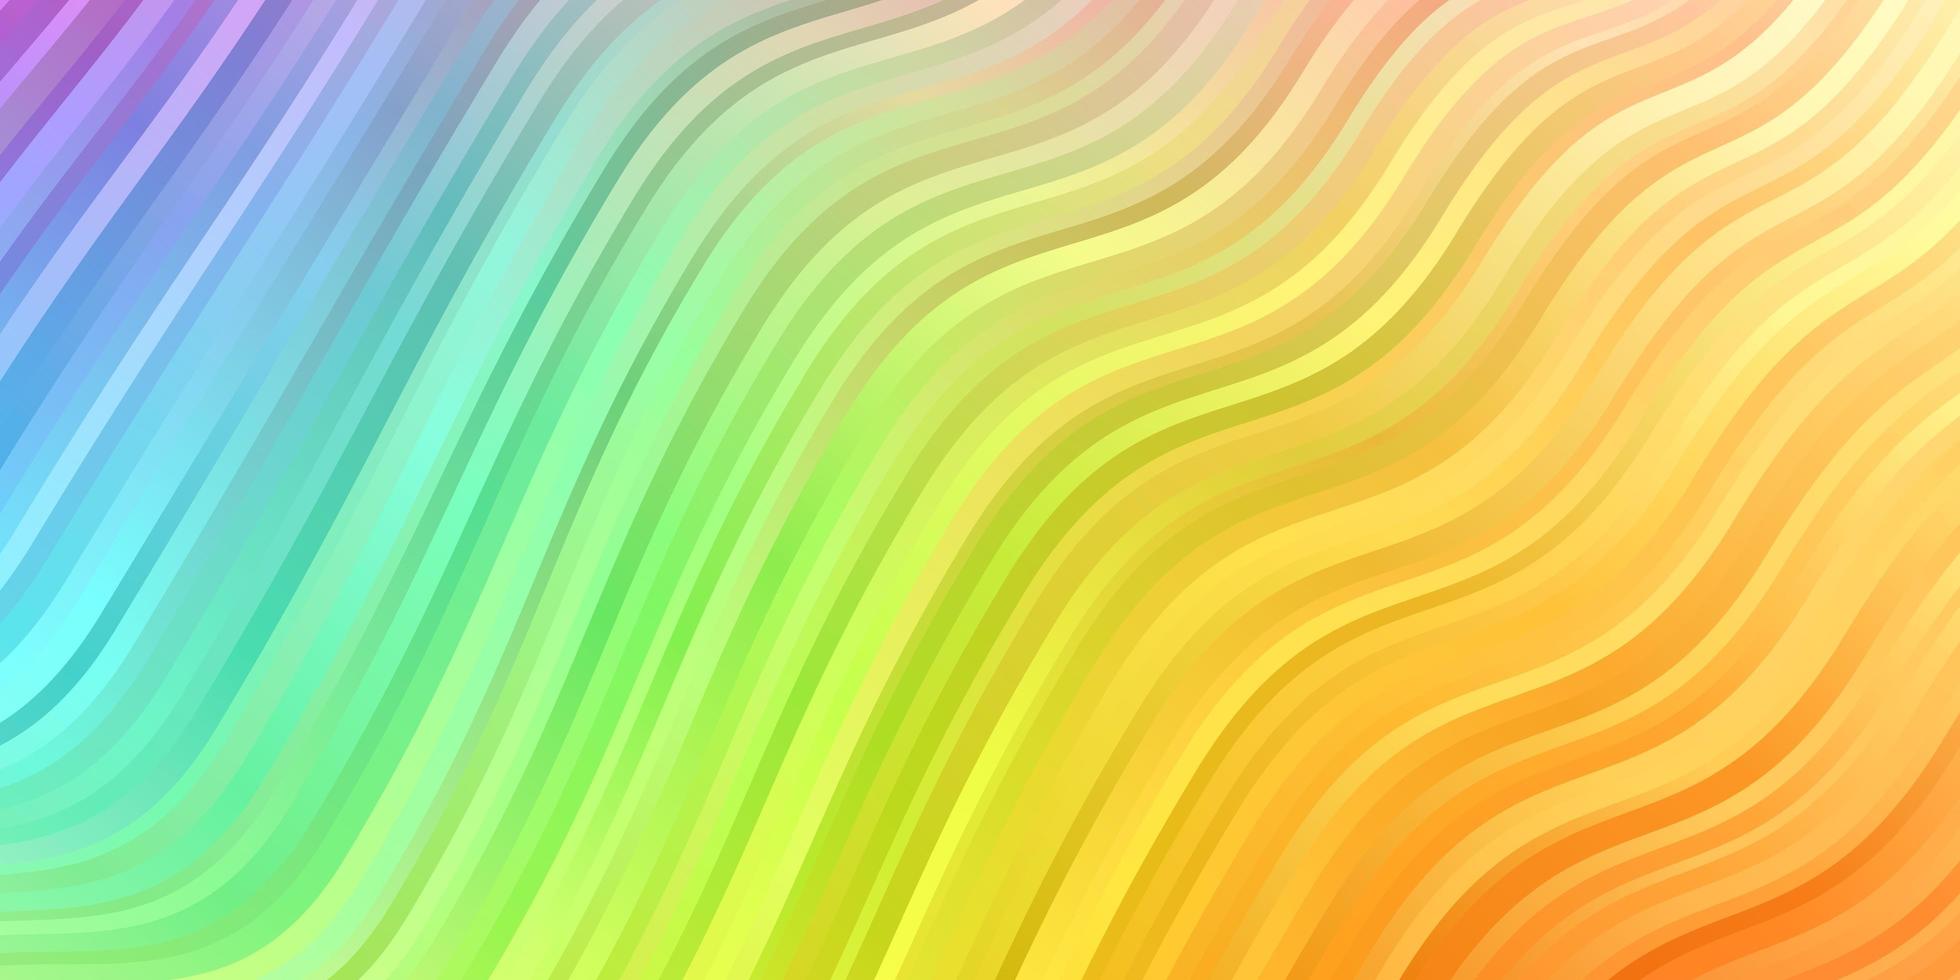 luz padrão multicolorido de vetor com linhas curvas.